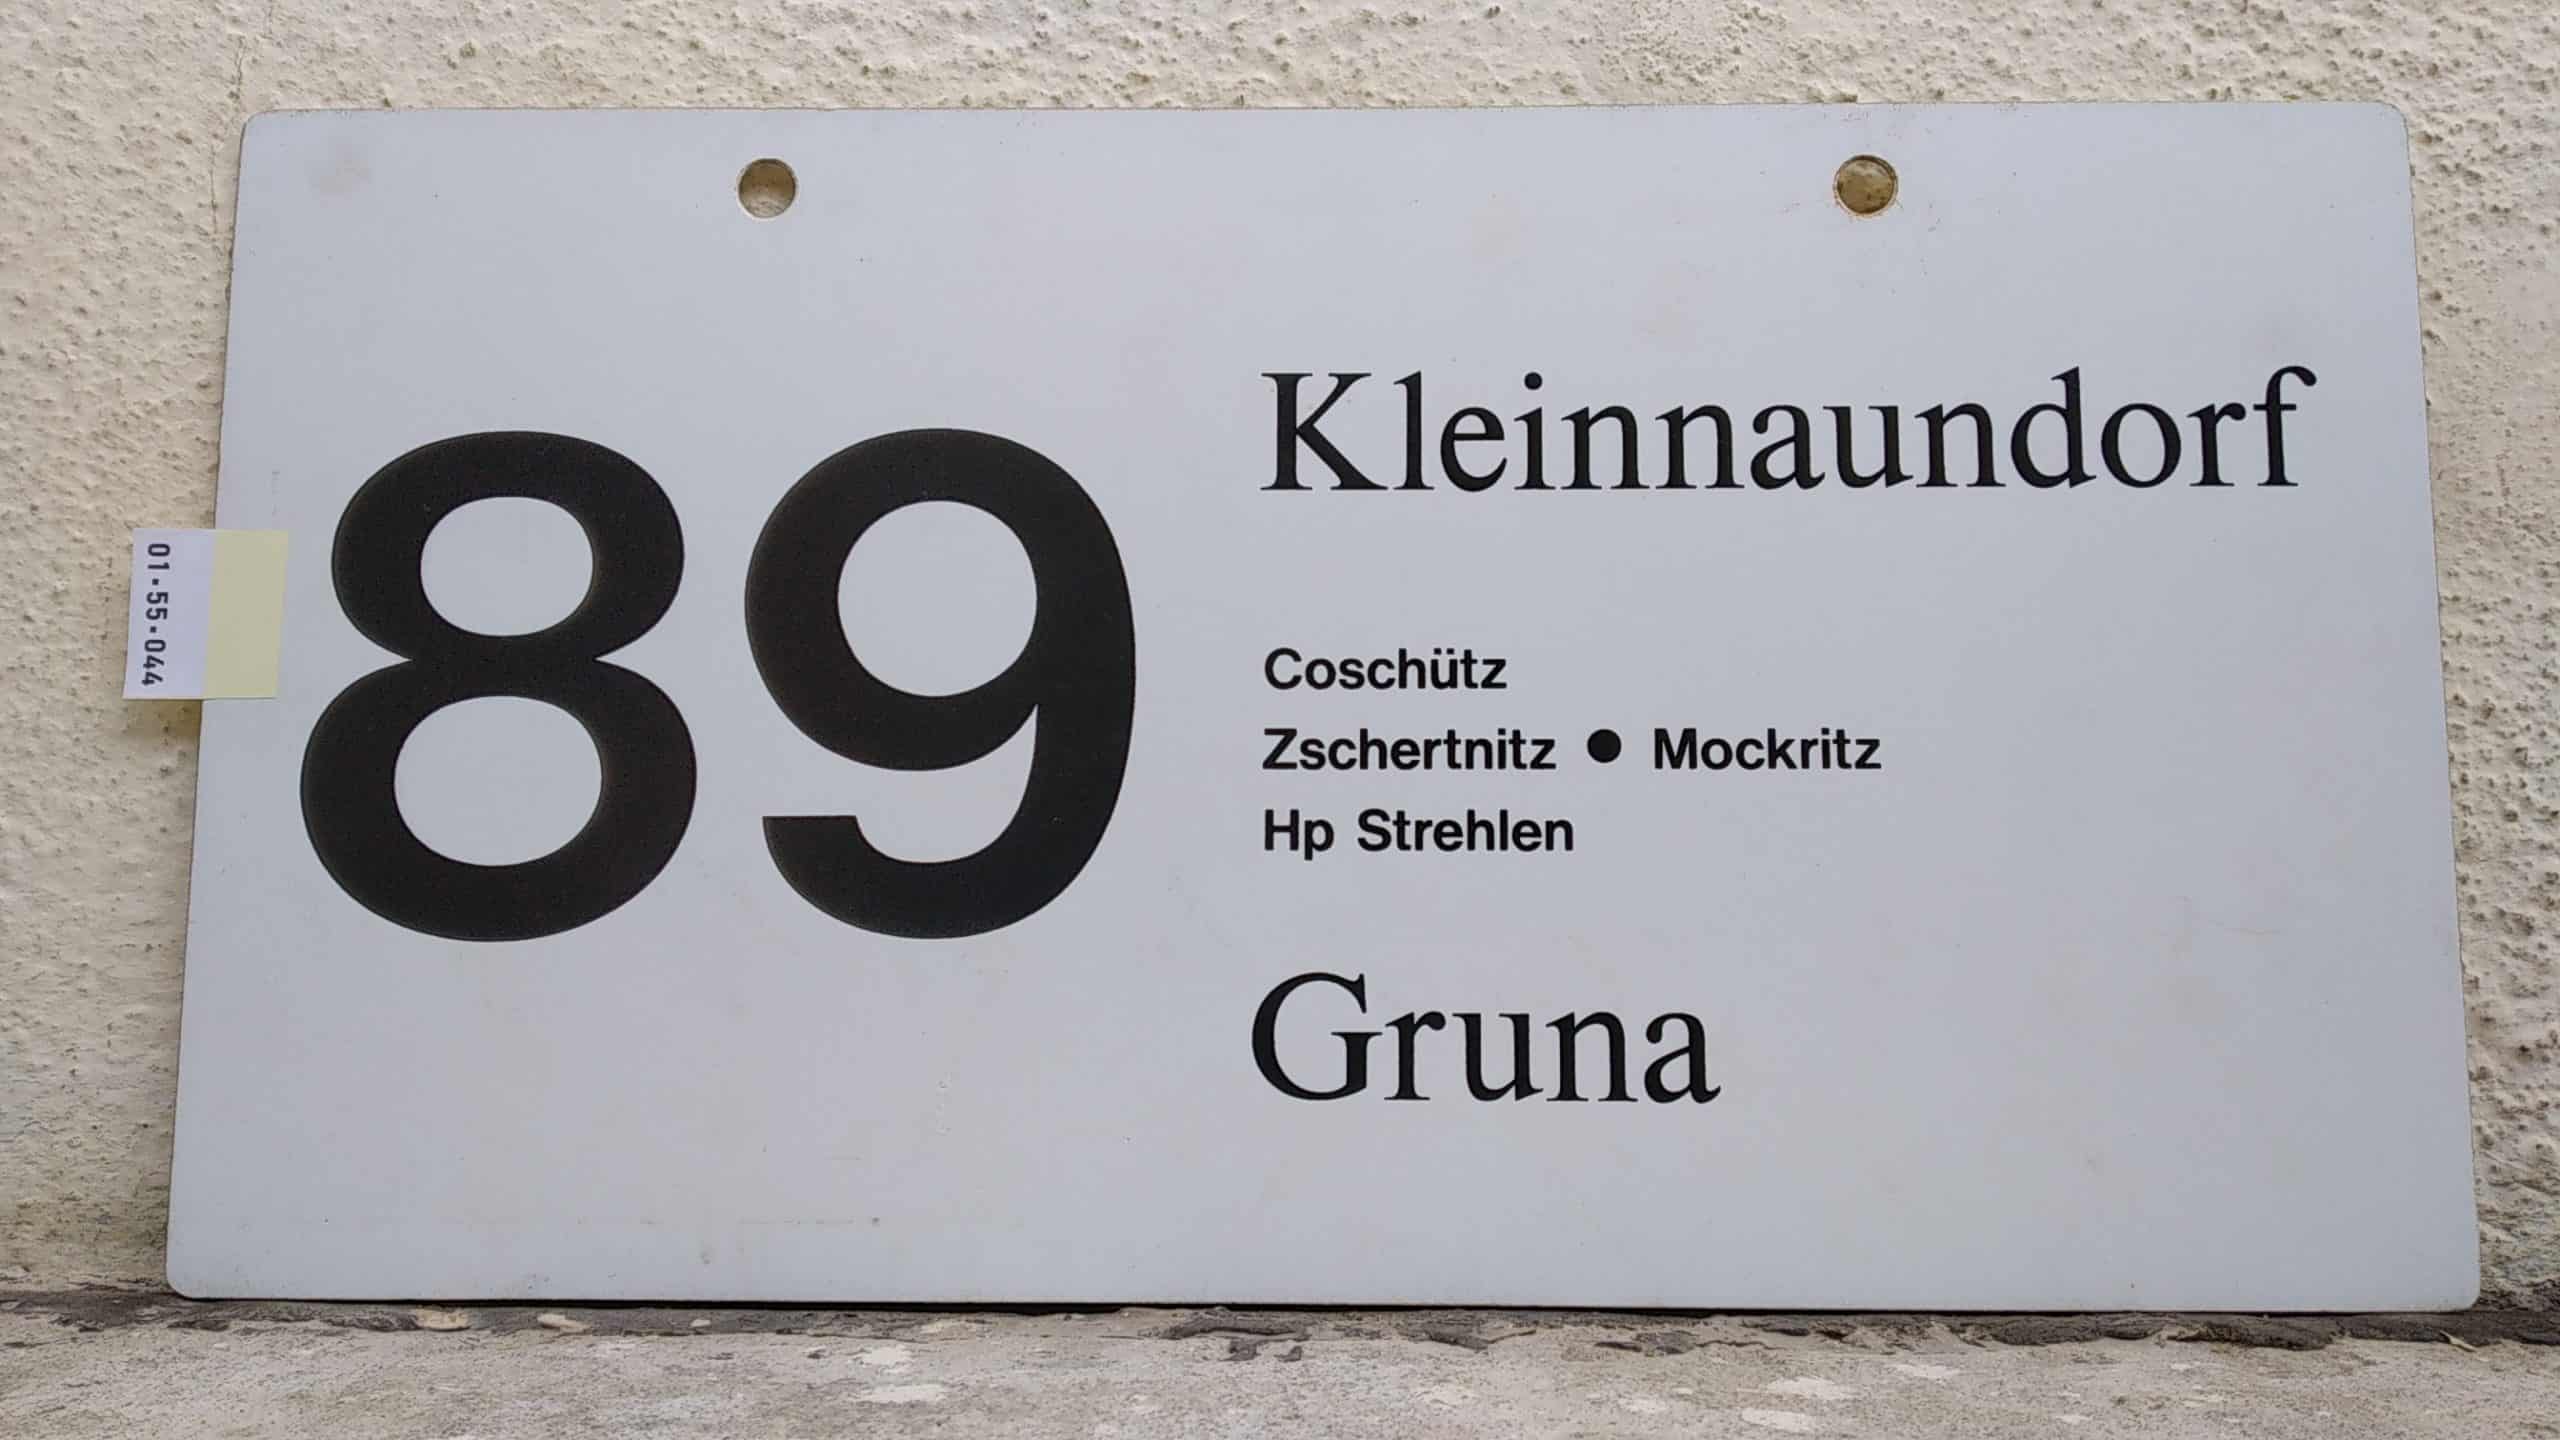 Ein seltenes Bus-Linienschild aus Dresden der Linie 89 von Kleinnaundorf nach Gruna #1